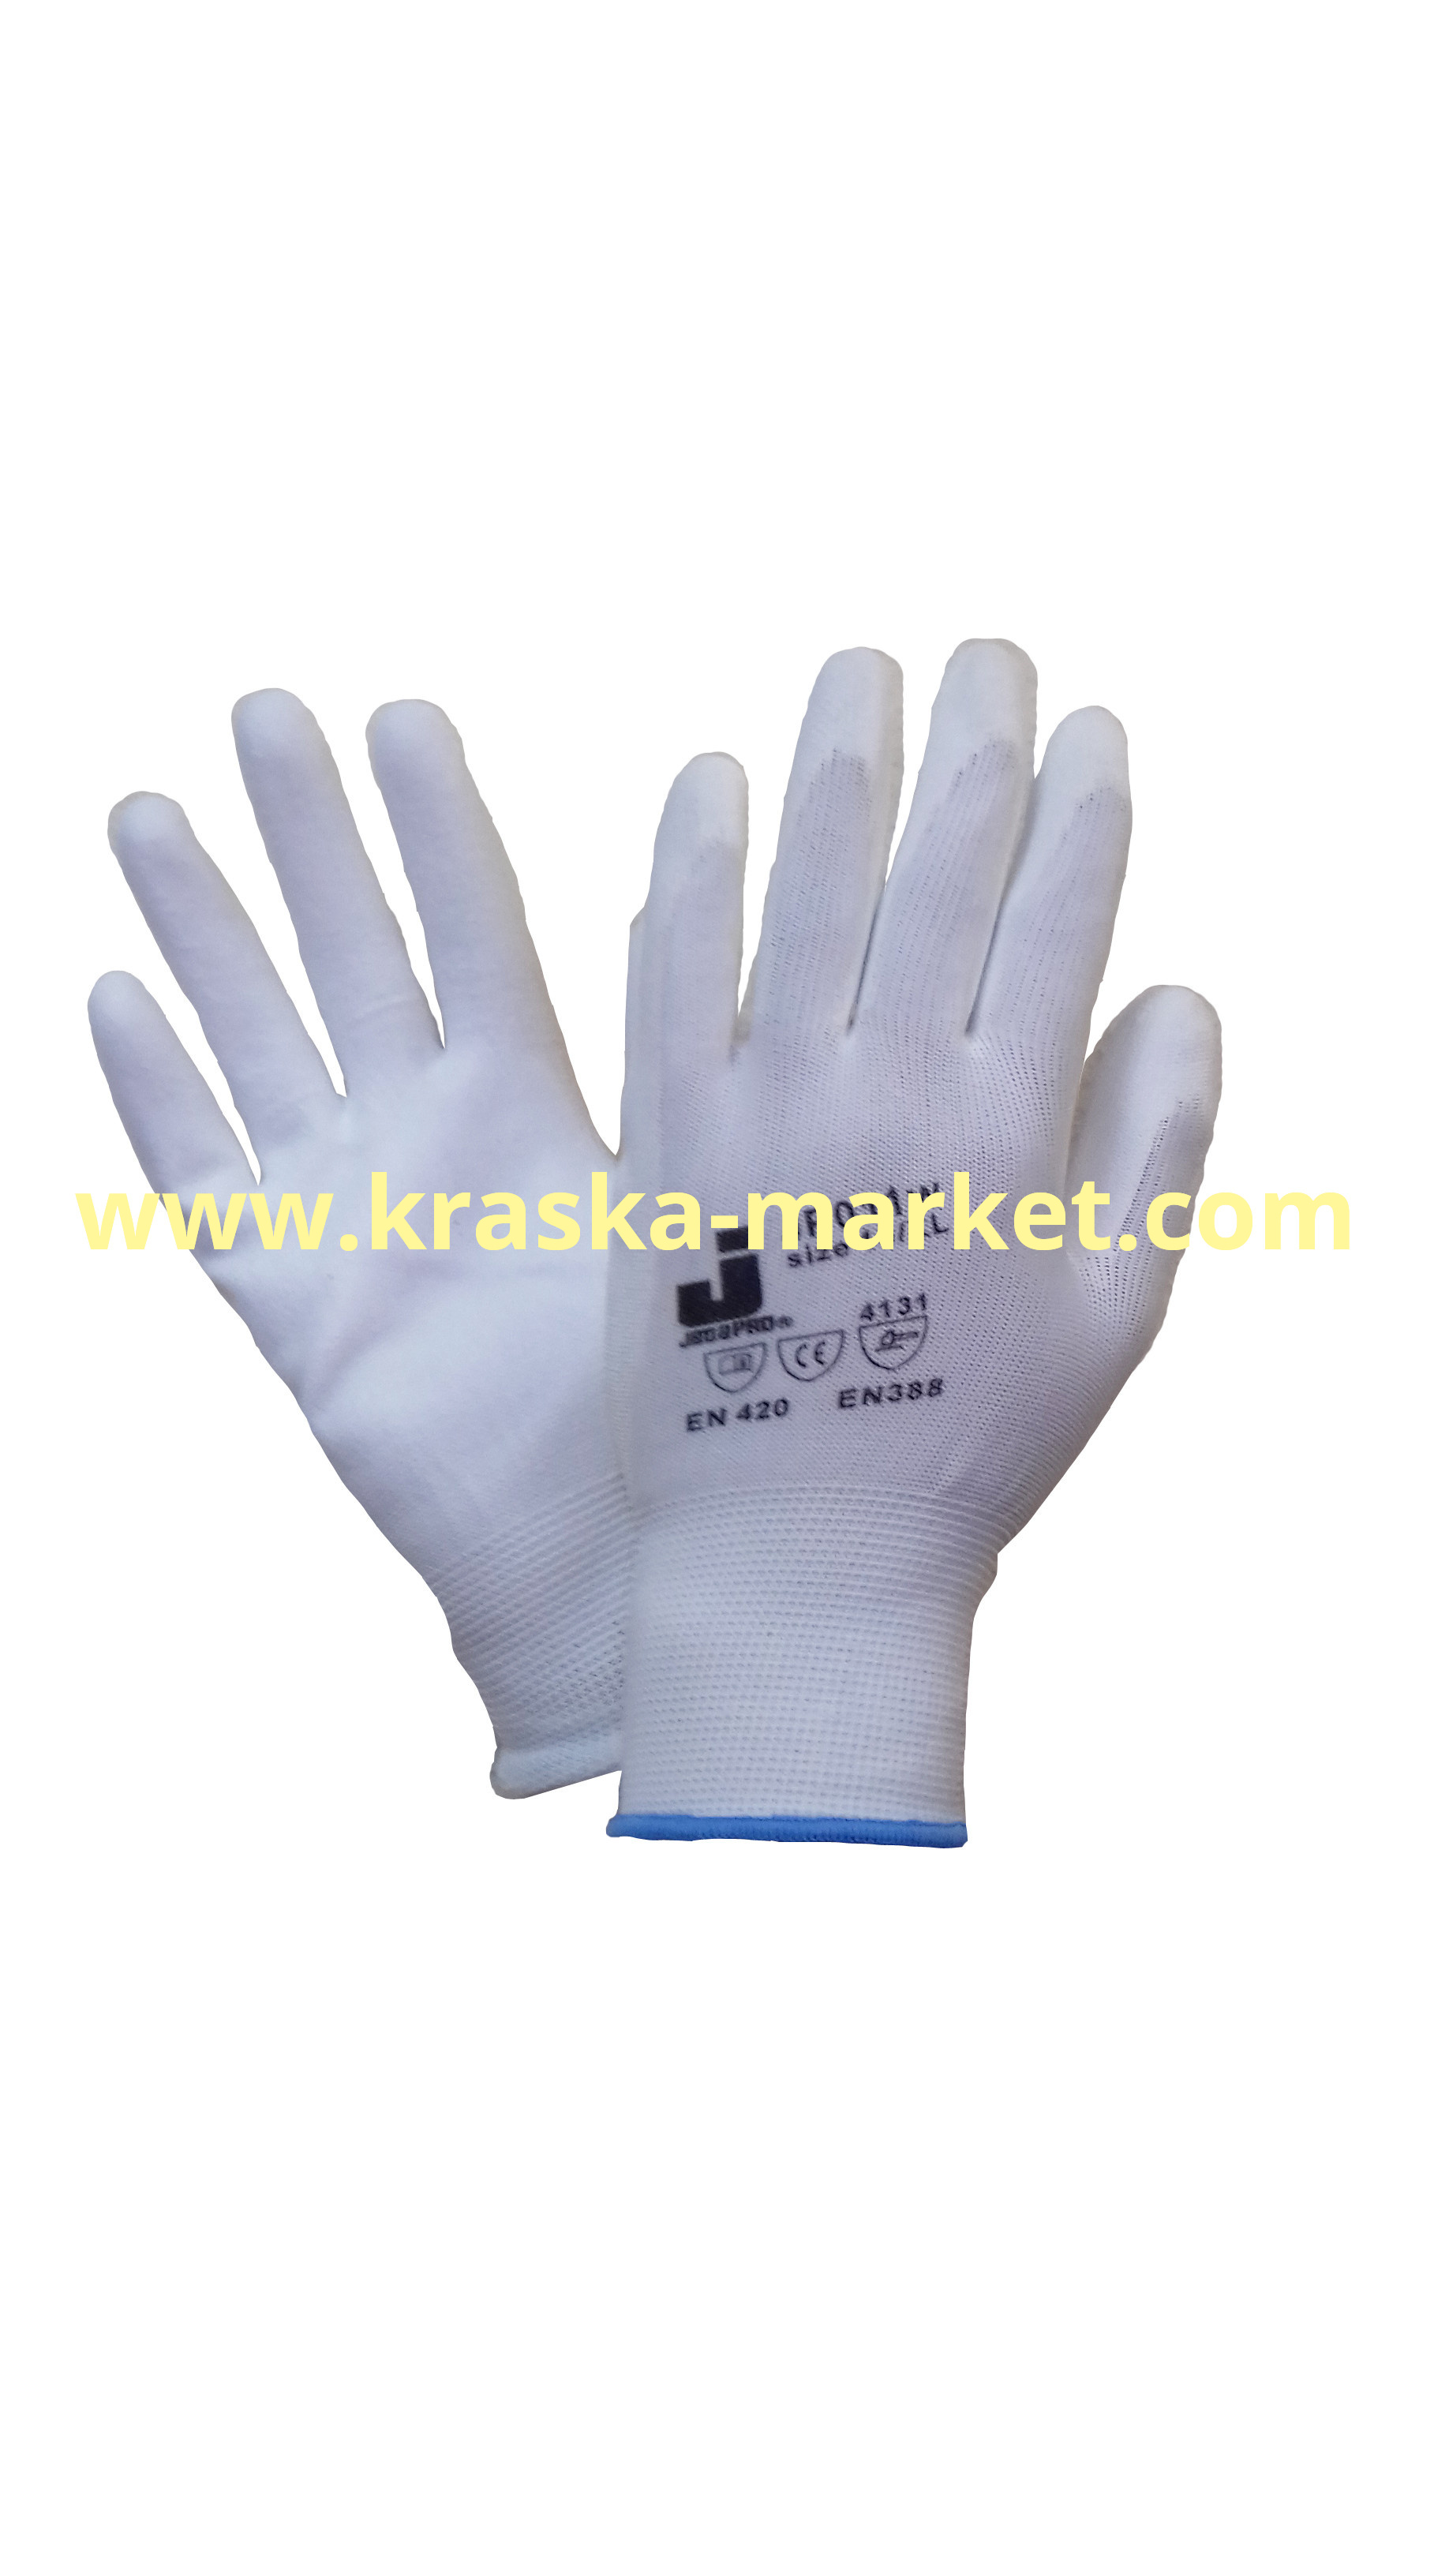 Защитные перчатки из полиэфирной пряжи c полиуретановым покрытием. Цвет: белый. Размер: XL. Торговая марка: JetaPro.